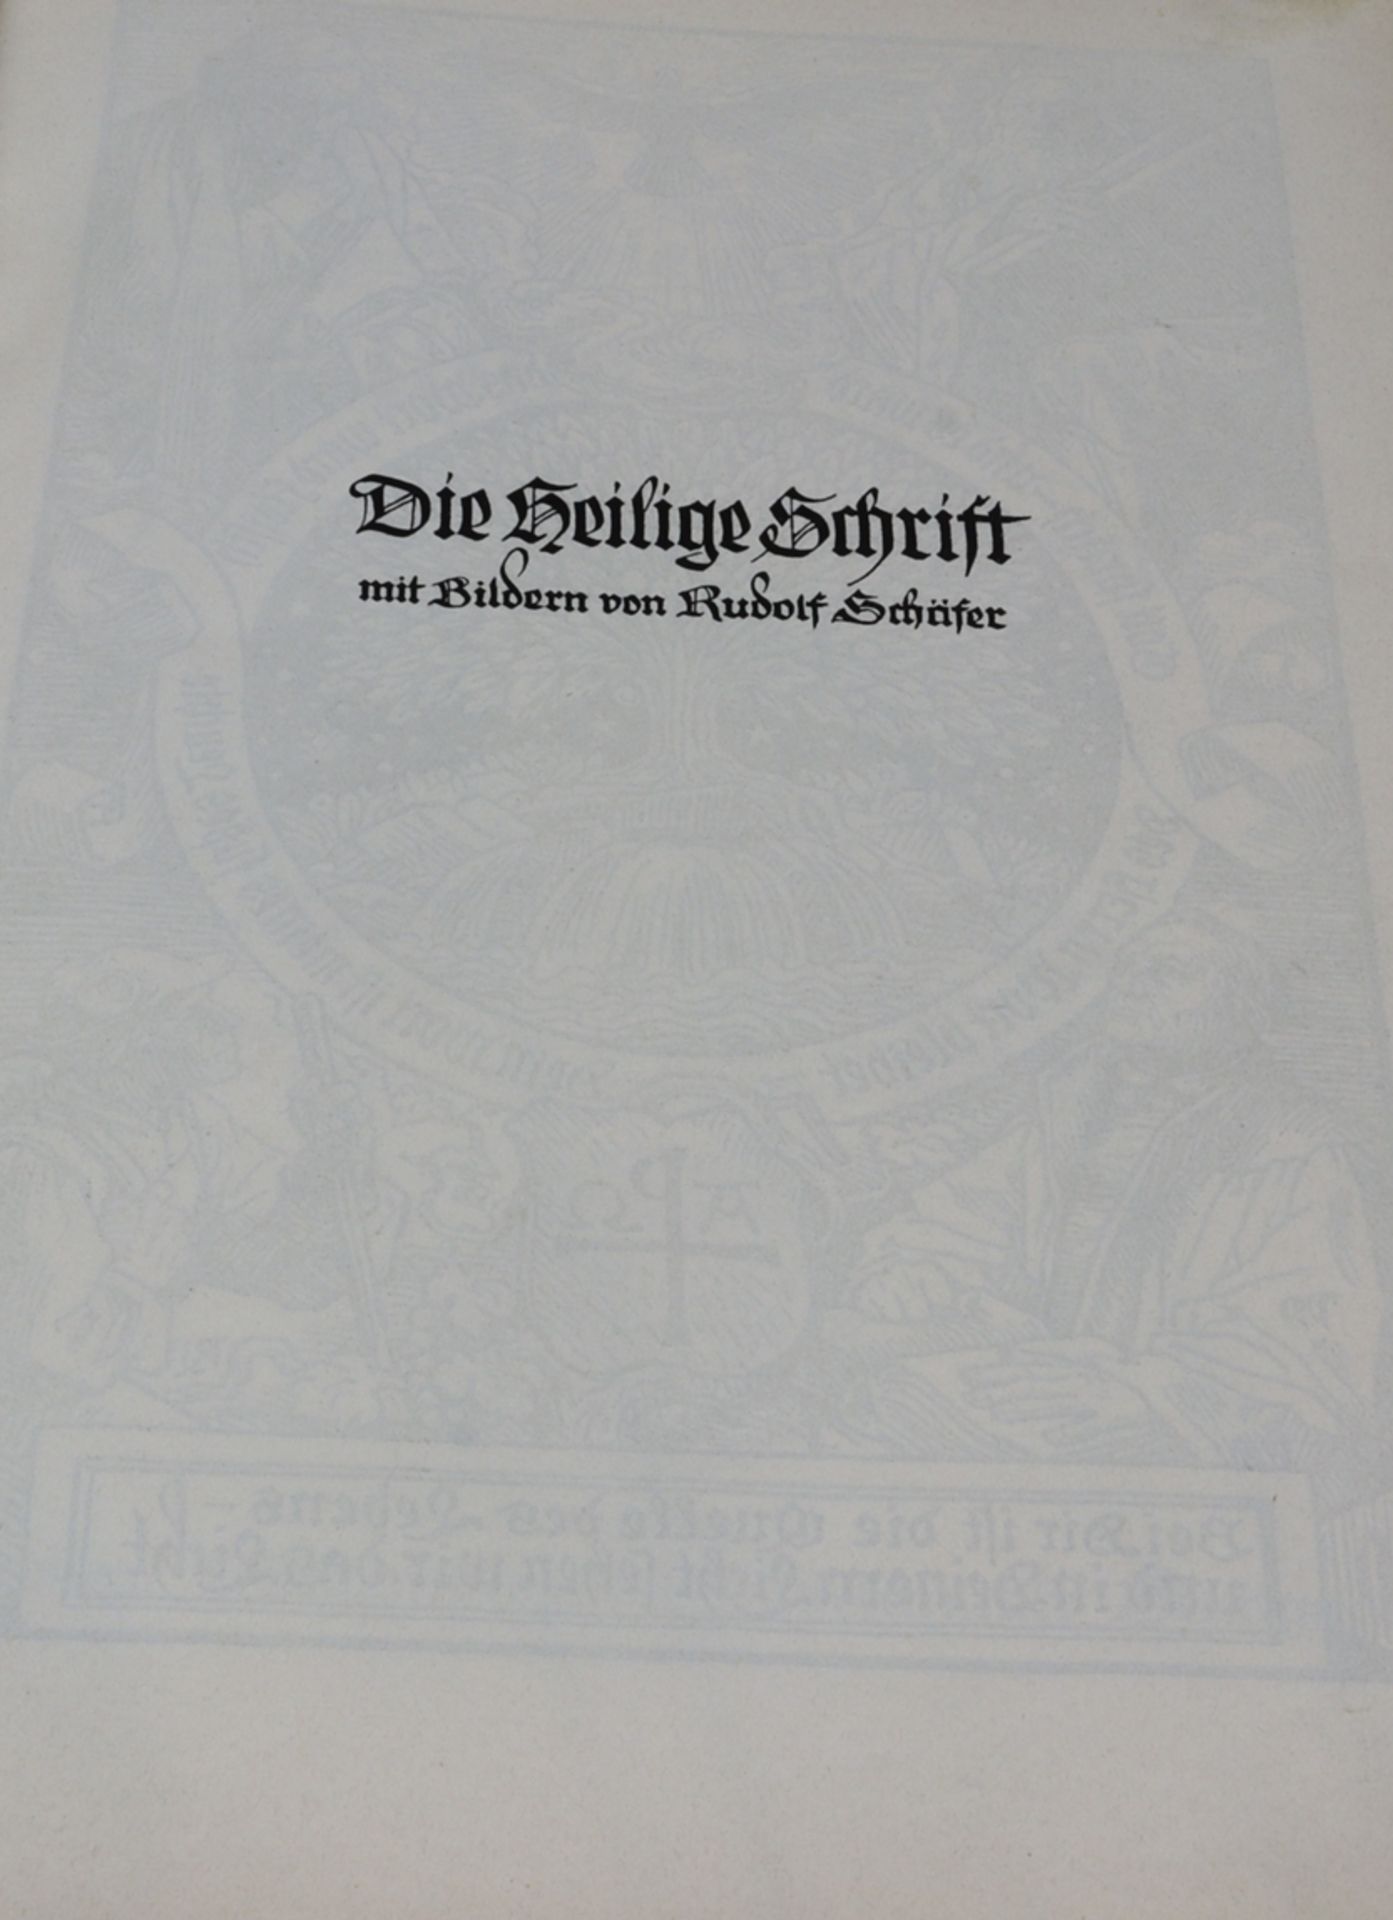 Die Bibel, ganze Heilige Schrift mit Bildern von Rudolf Schäfer Stuttgart 1929 - Image 2 of 4